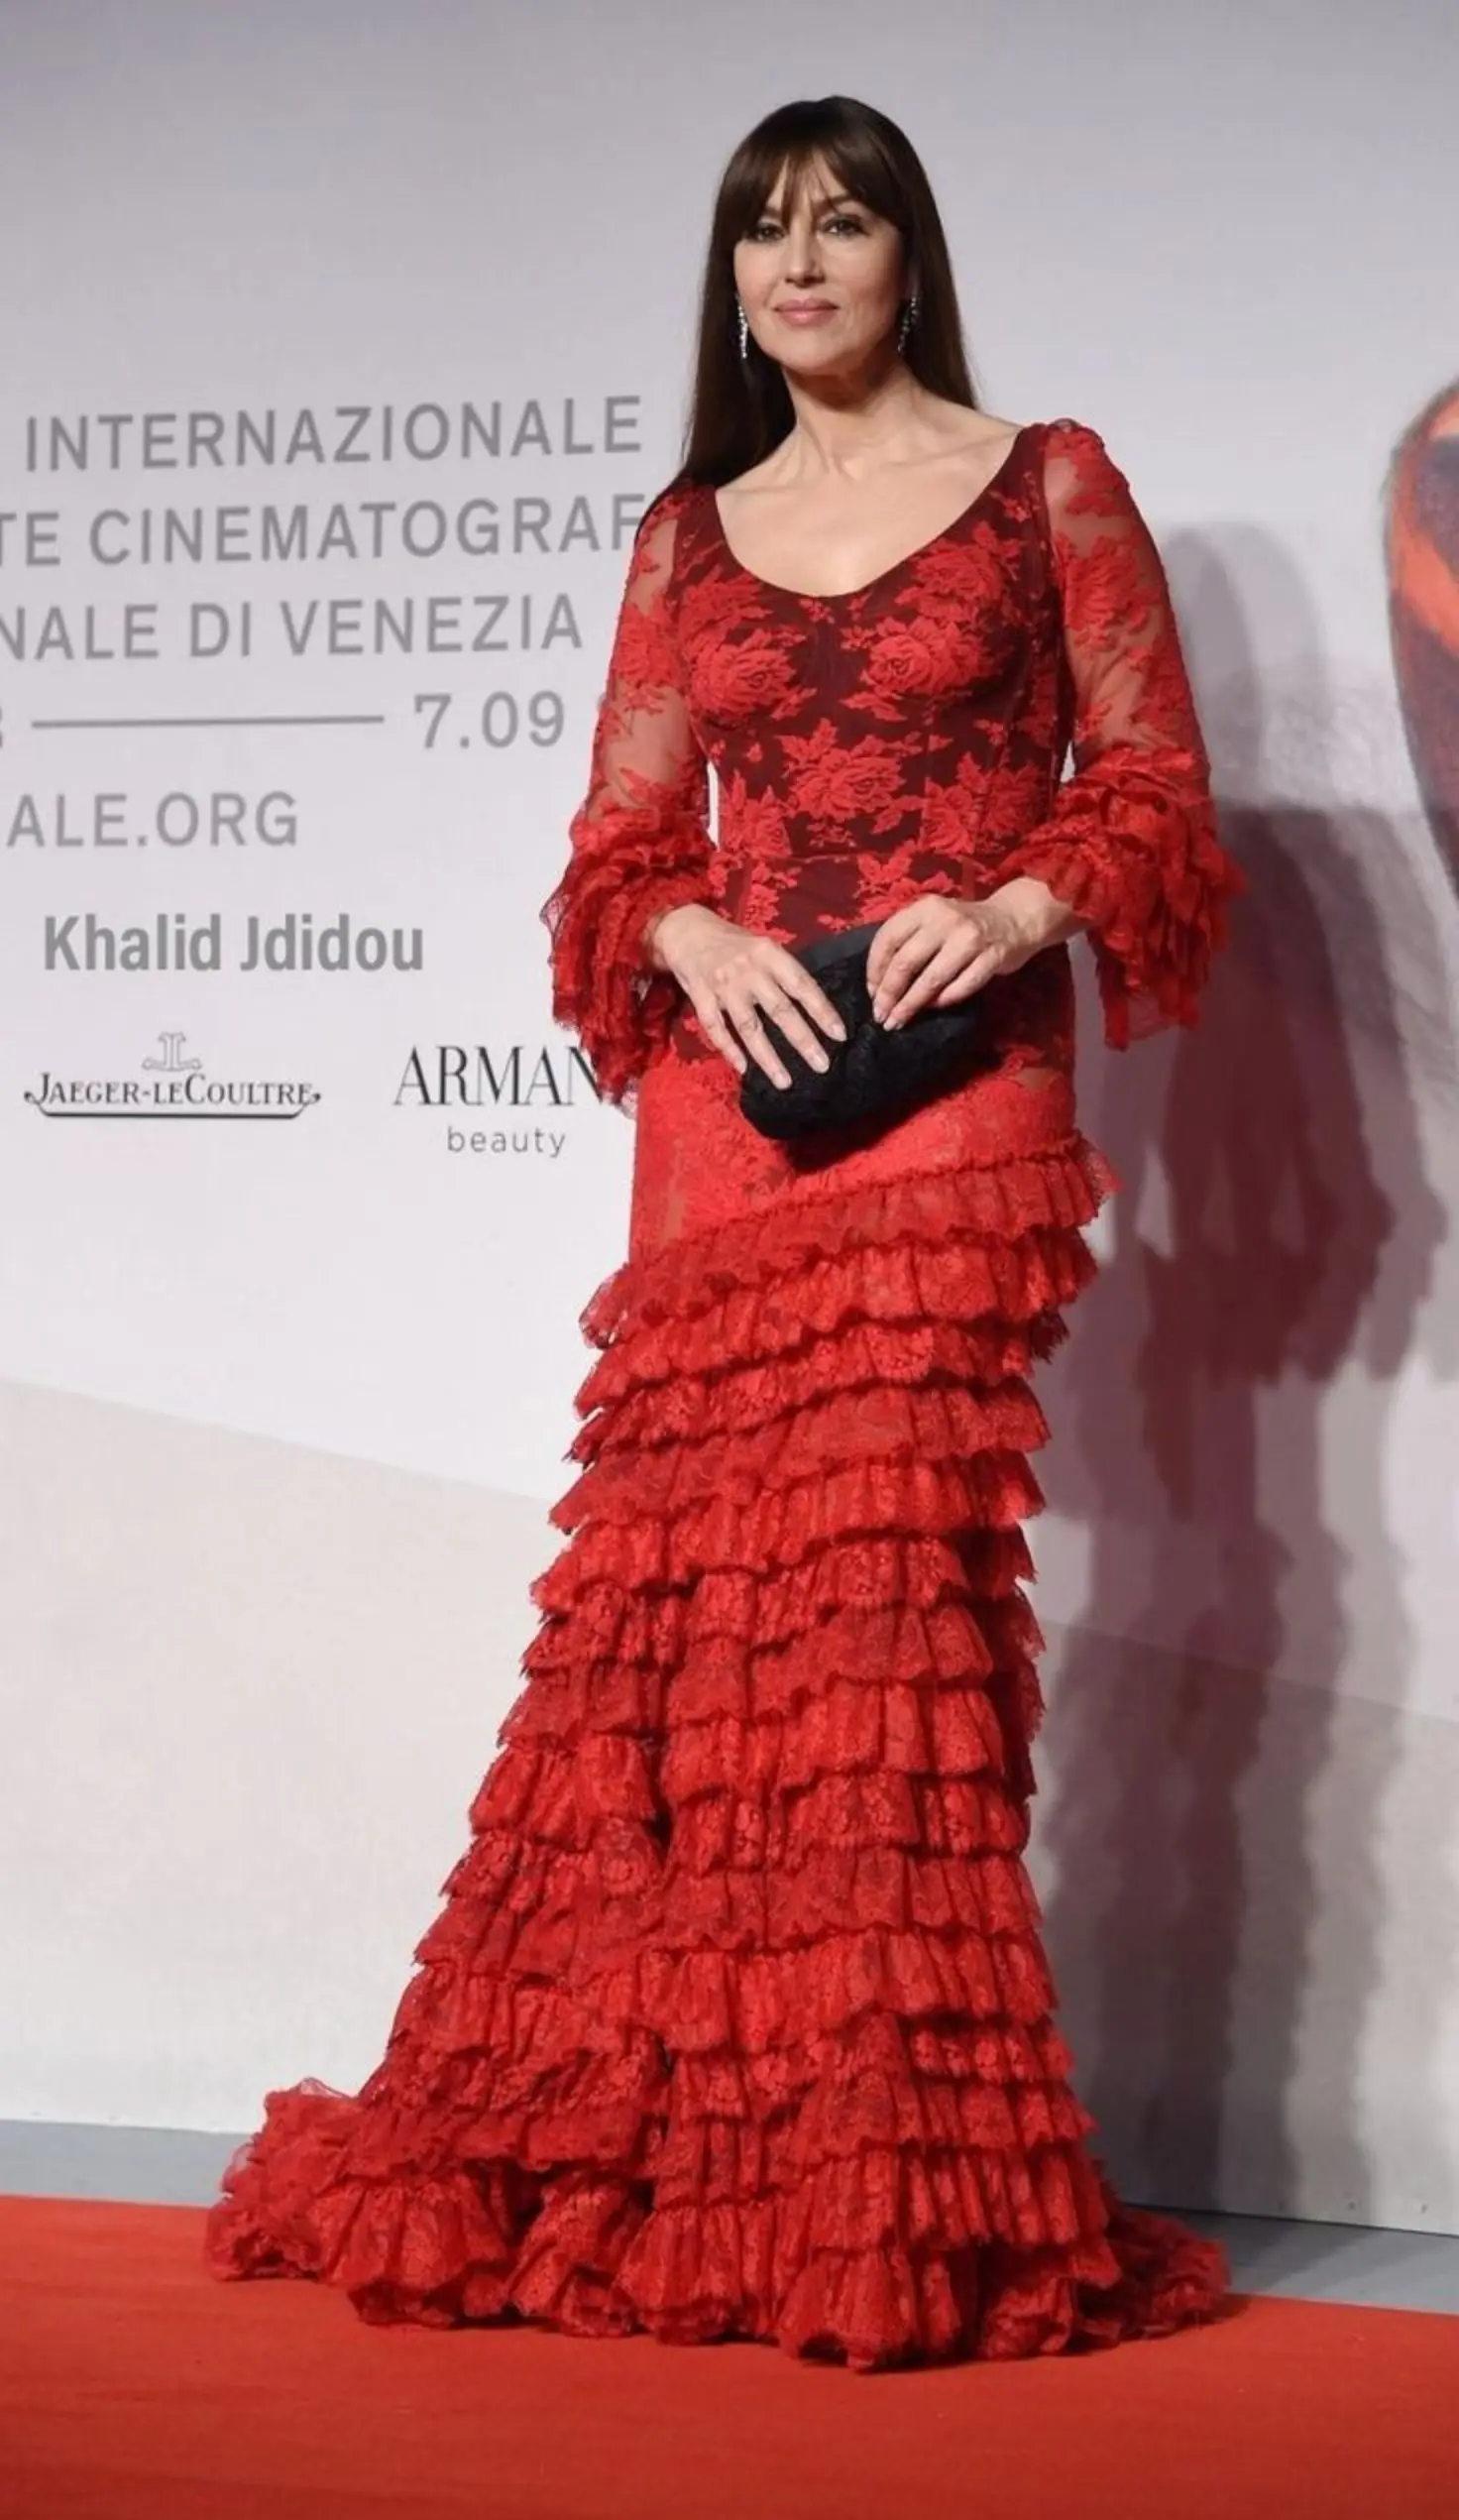 استایل مونیکا بلوچی با لباس رنگ قرمز